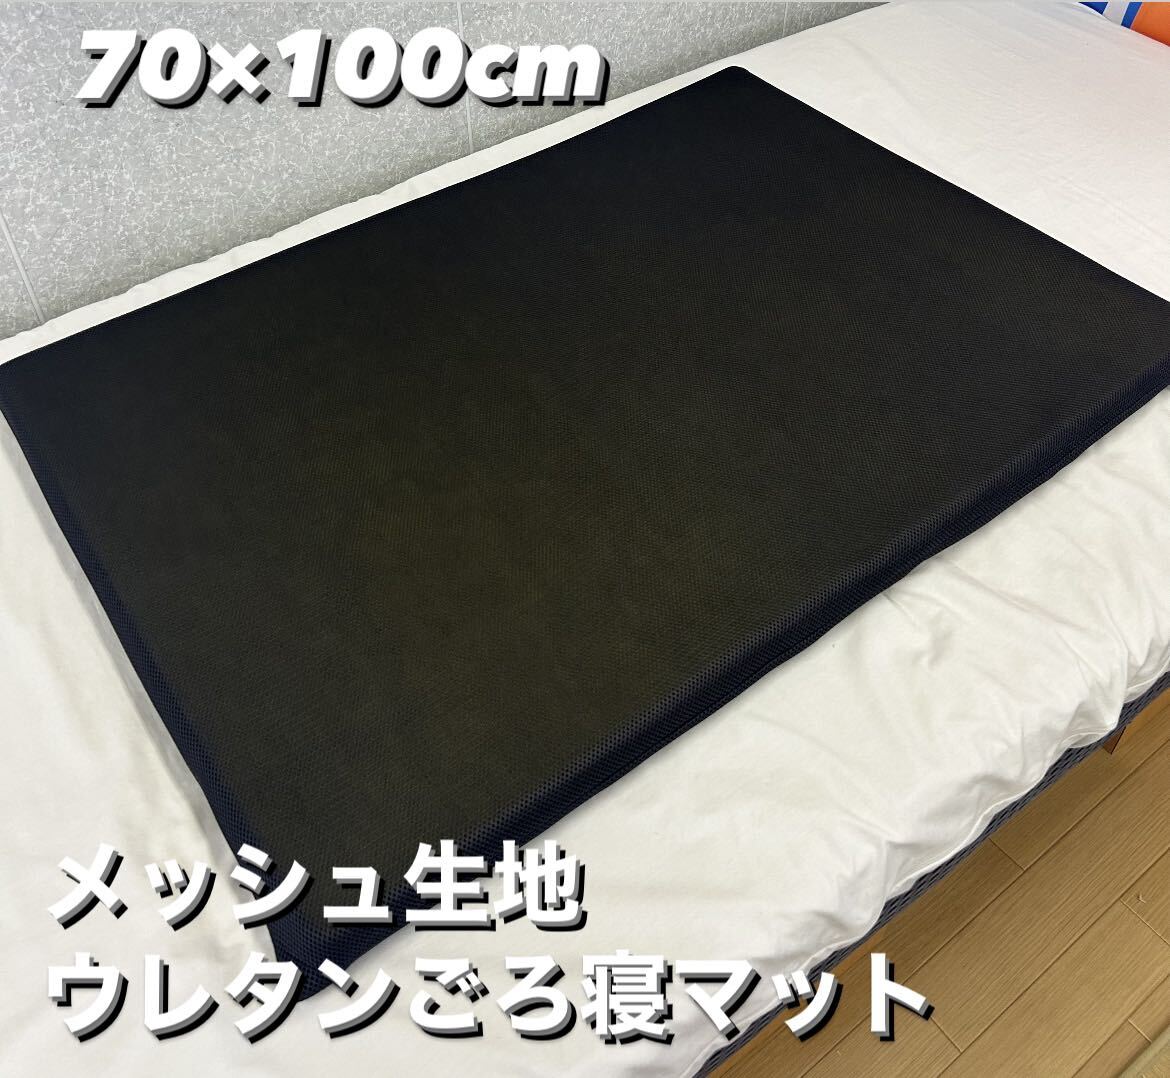  новый товар! сетка ткань ... уретан лежать на полу коврик 70×100cm